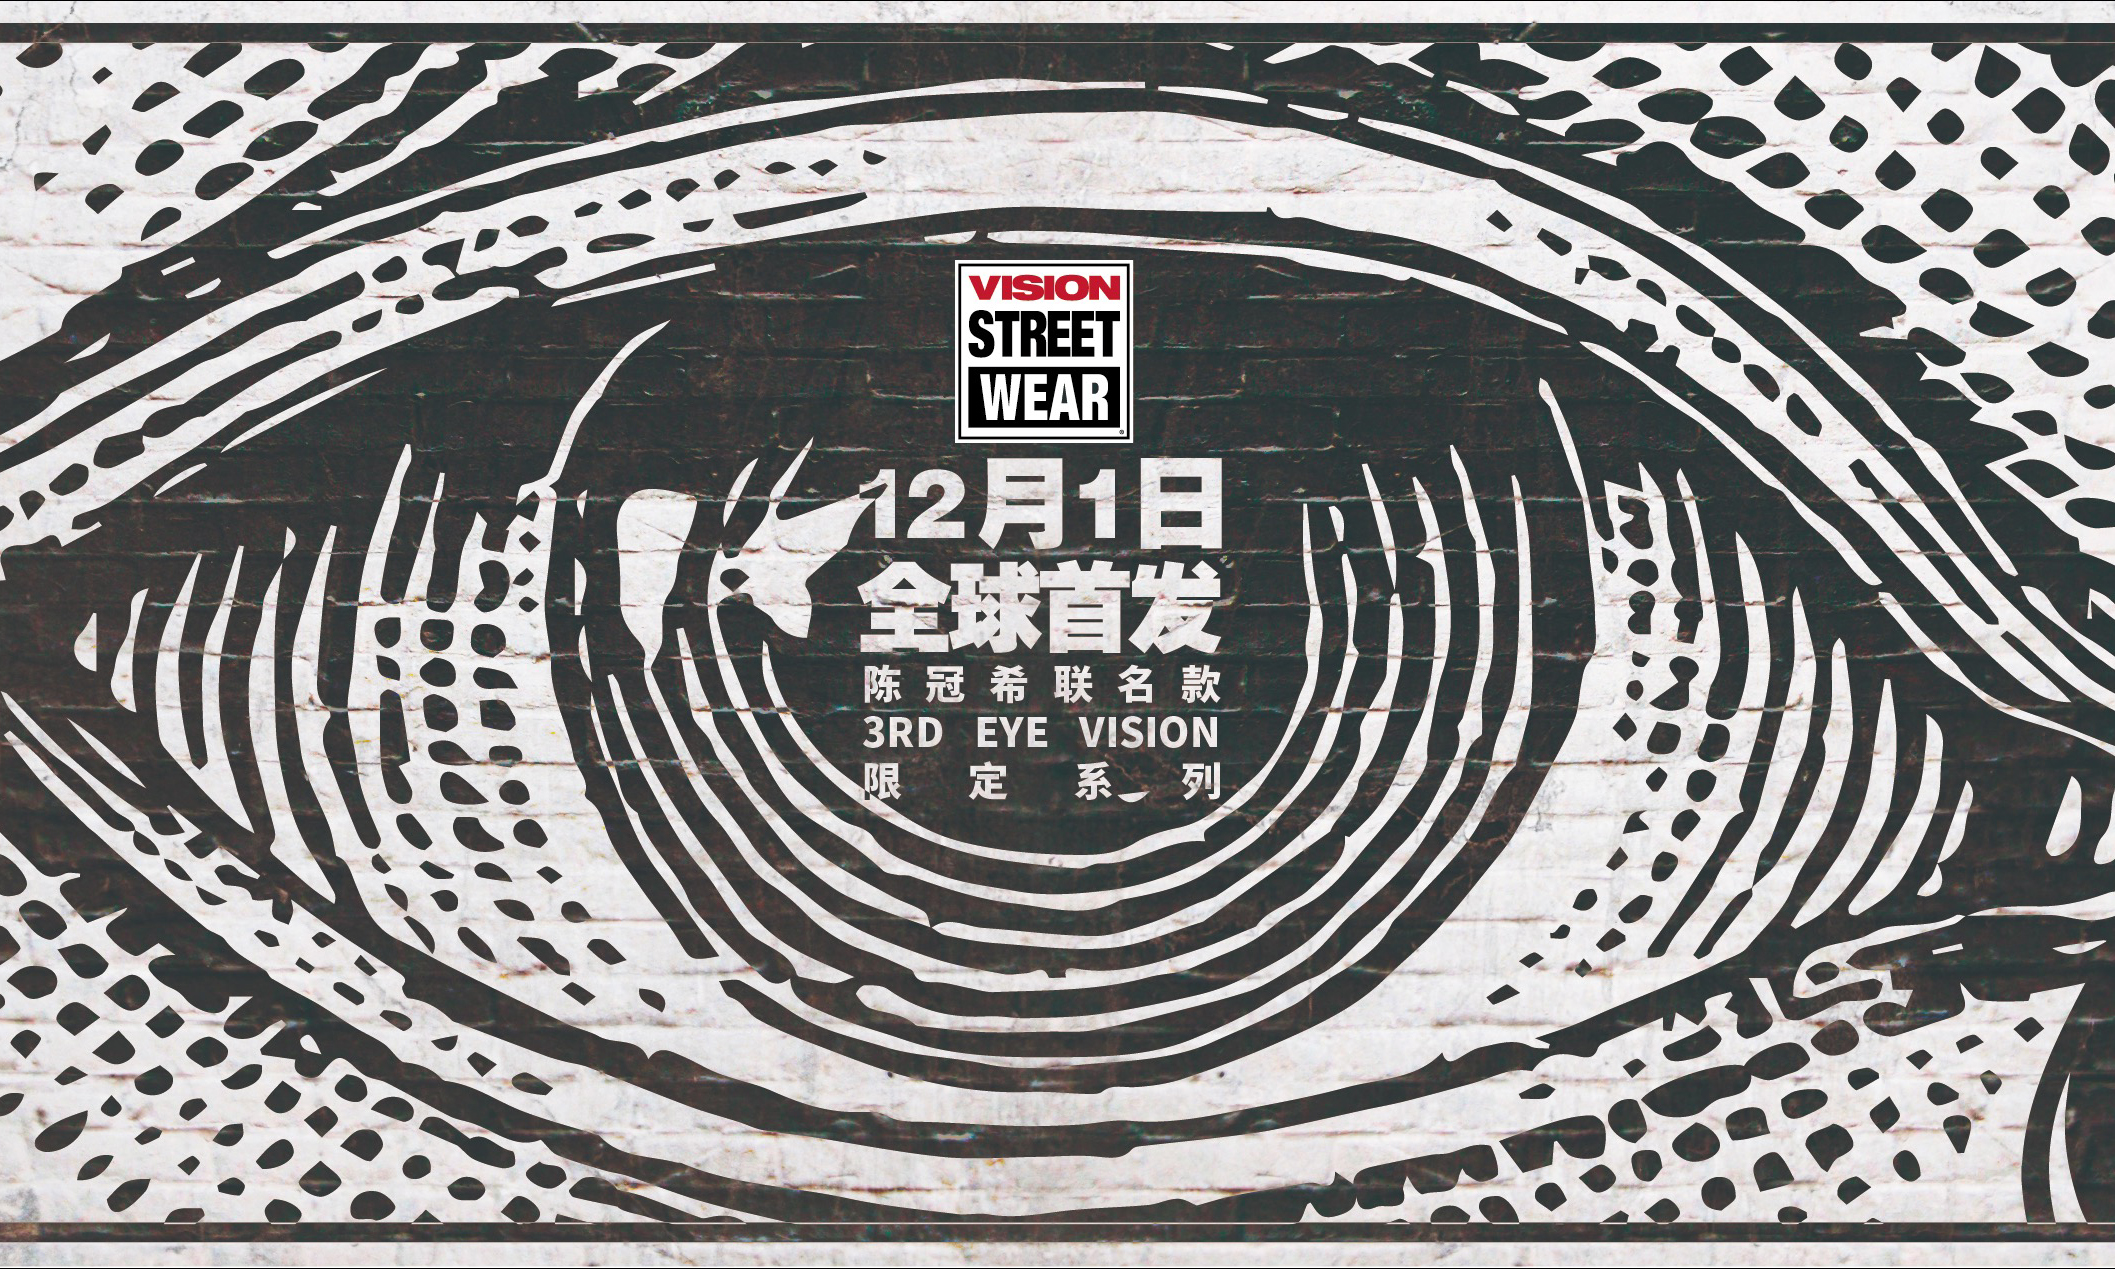 陈冠希 x Vision Street Wear 联名系列将于 12 月 1 日首发